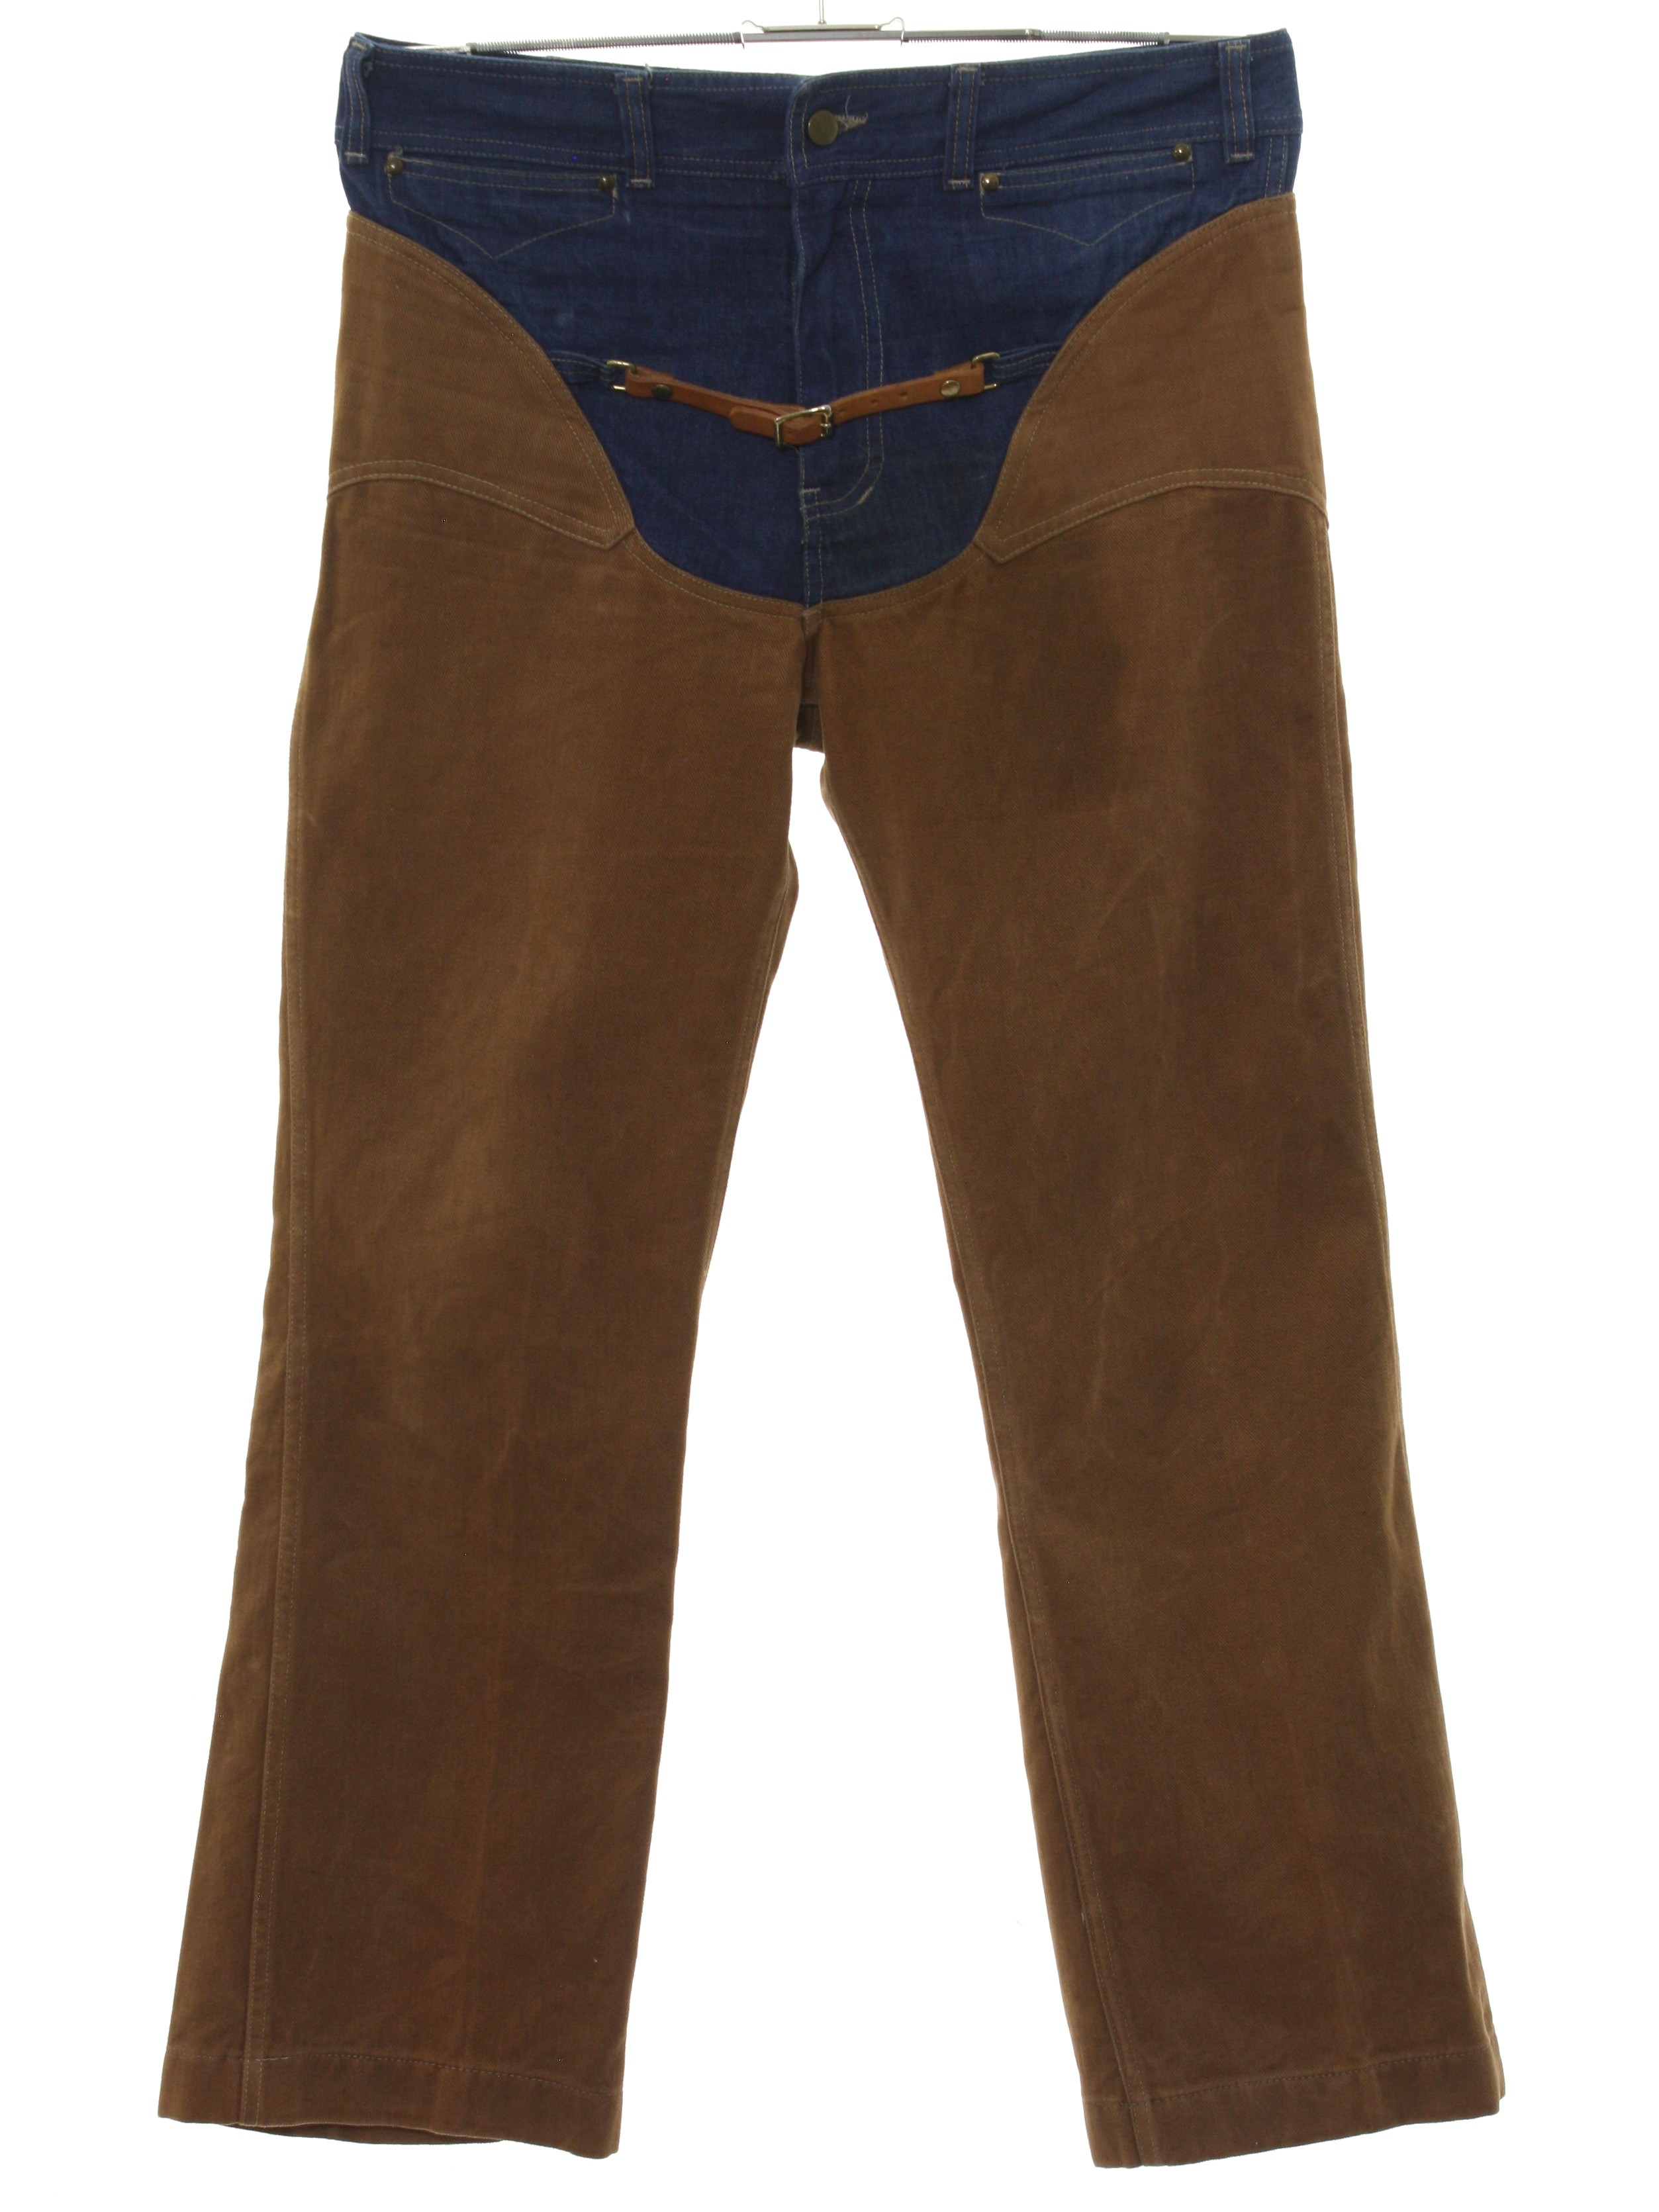 70's Vintage Flared Pants / Flares: 70s -Bronco Buster- Mens denim blue ...